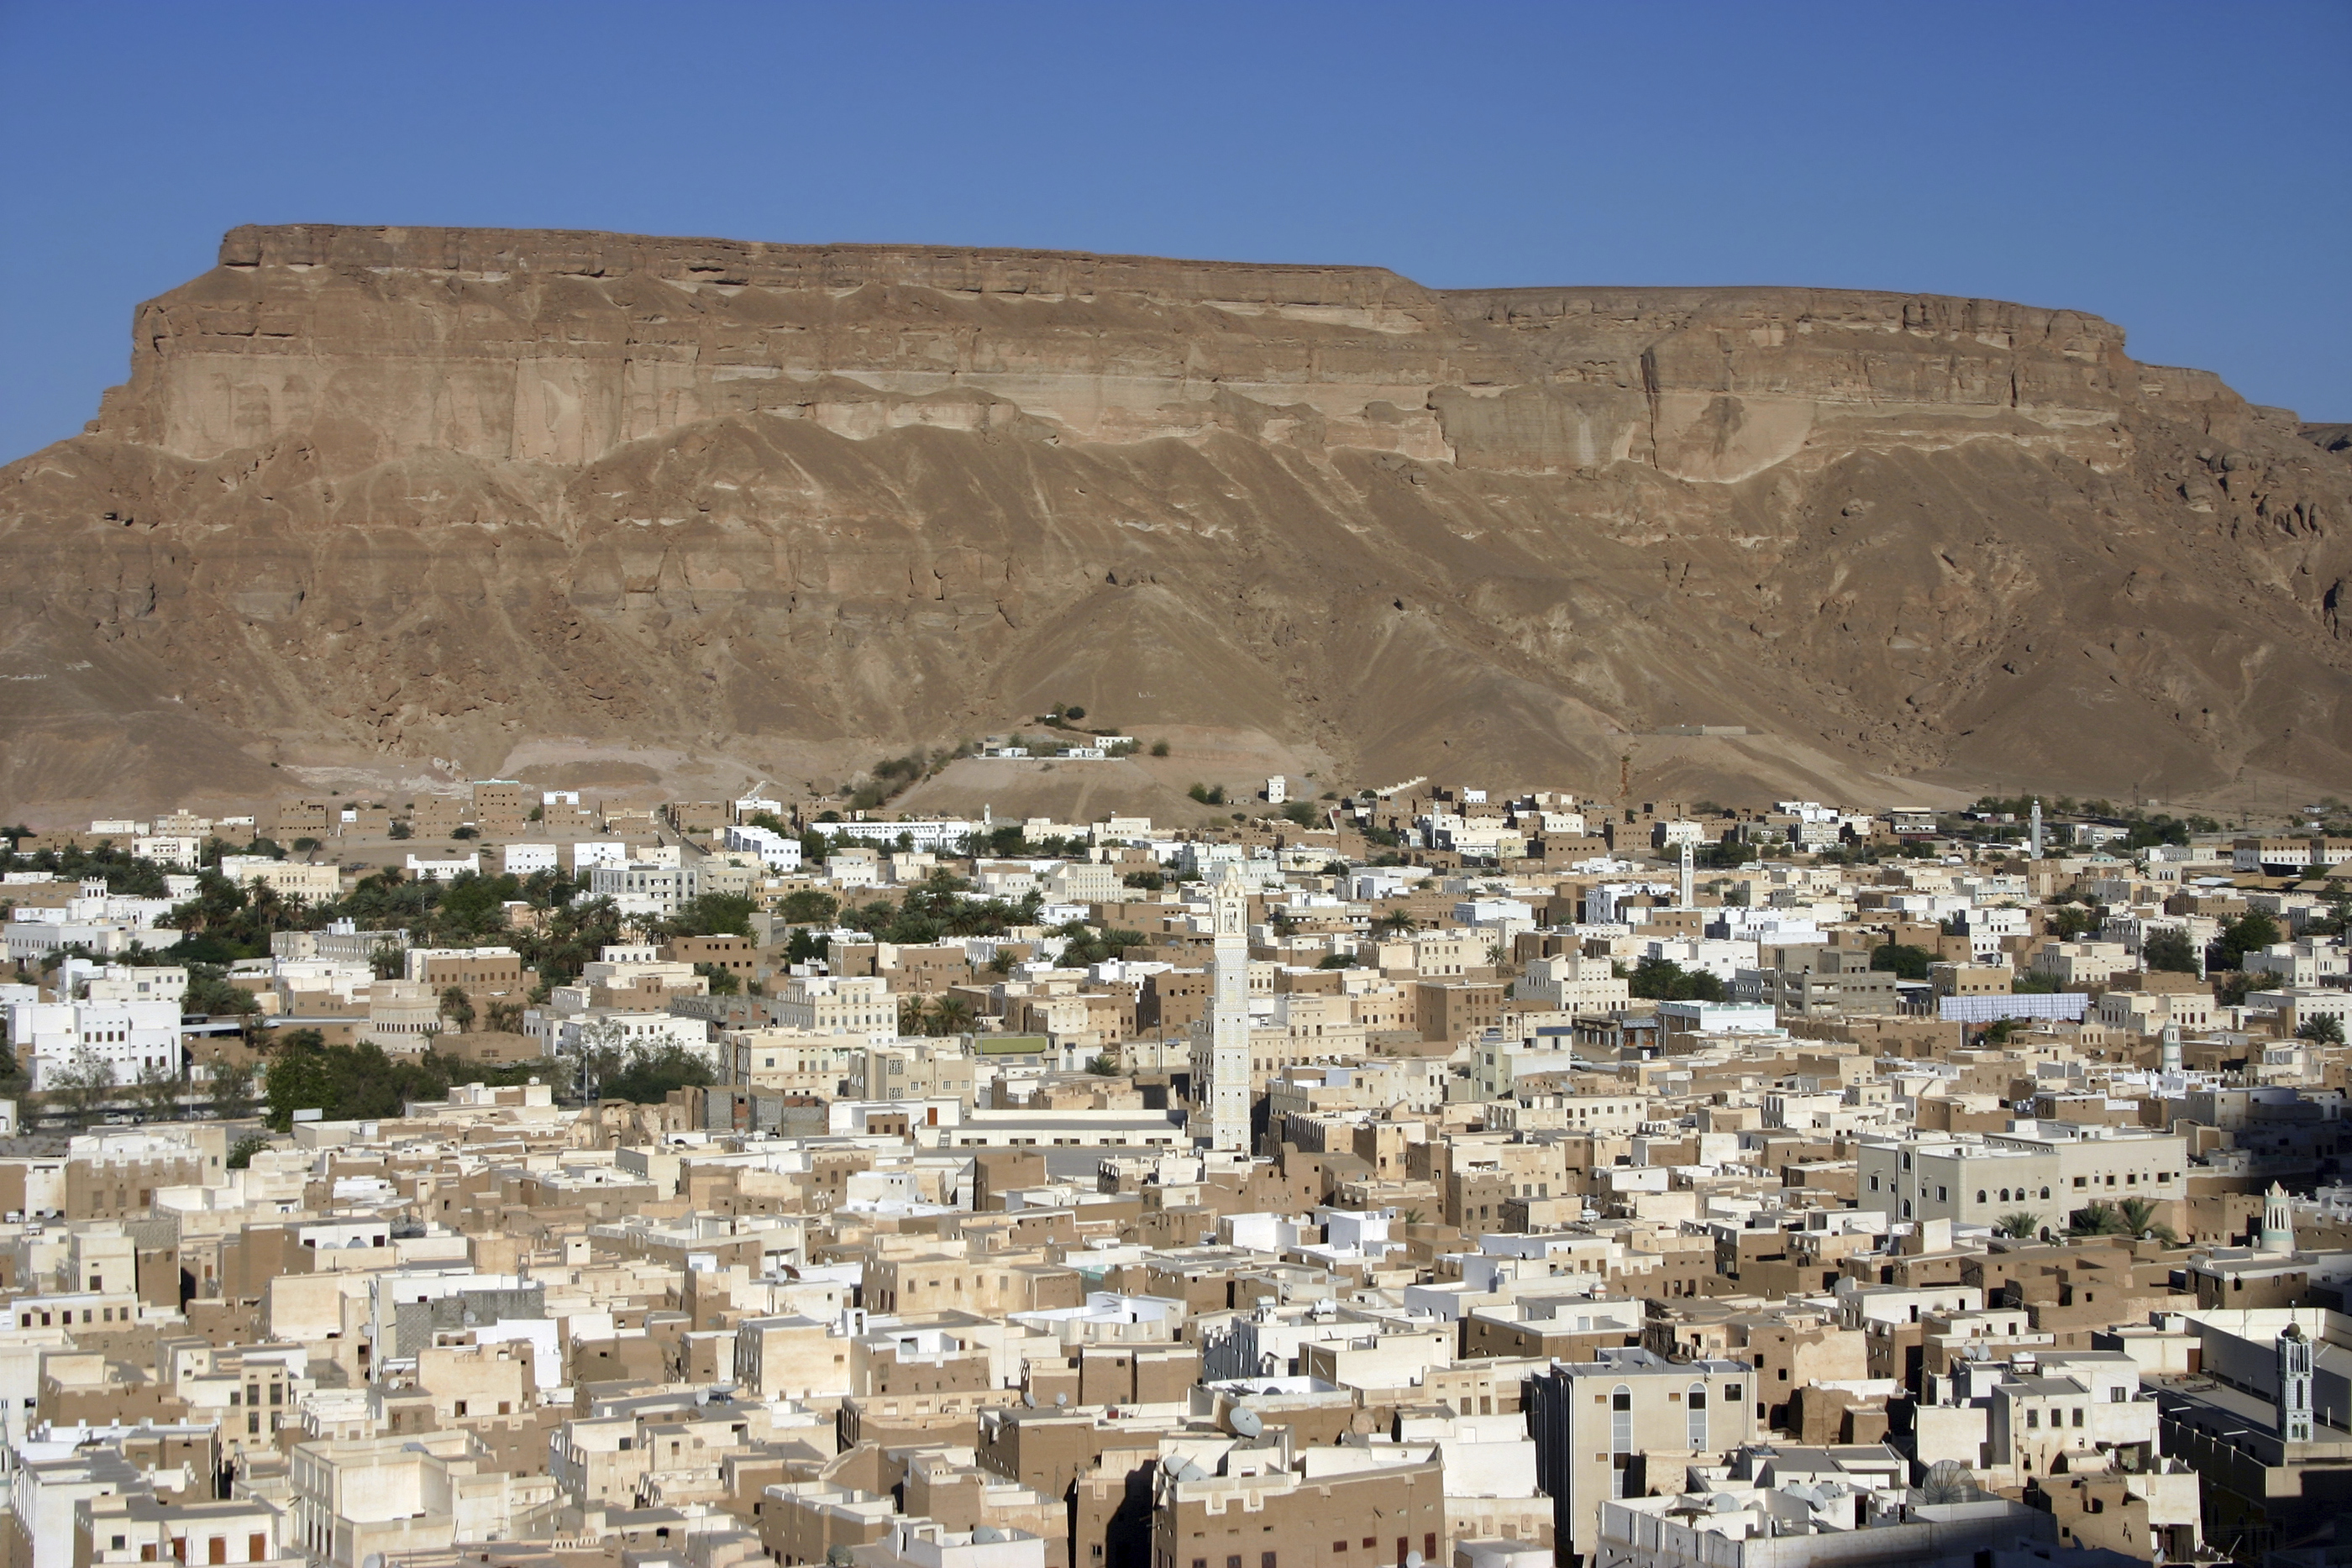 View of Seiyun, Yemen